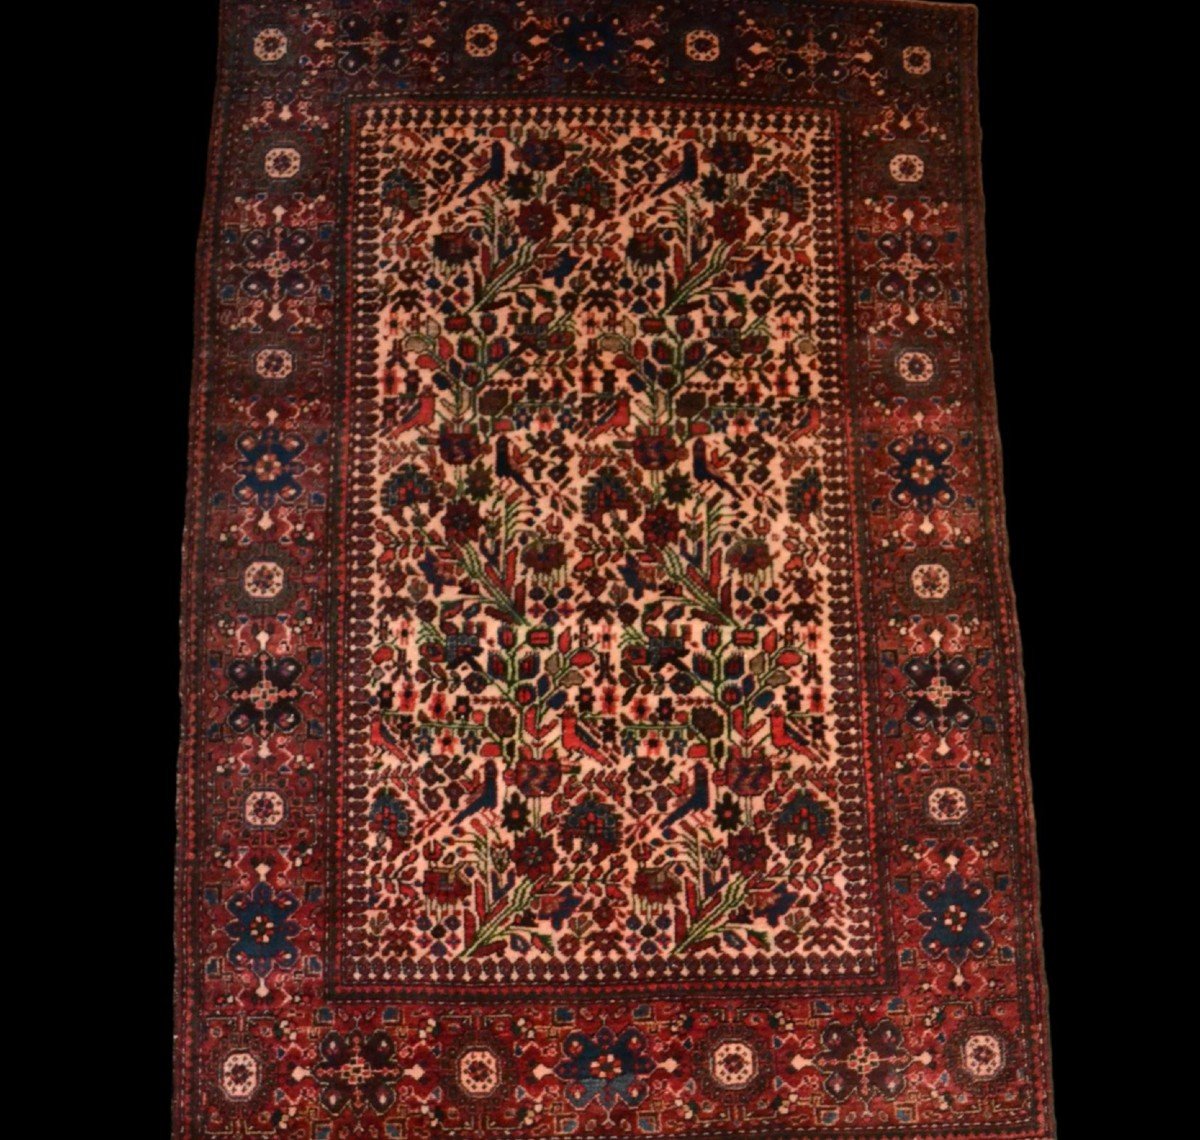 Tapis Sarouk, 130 x 194 cm, laine nouée main vers le milieu du XXème siècle, très bon état